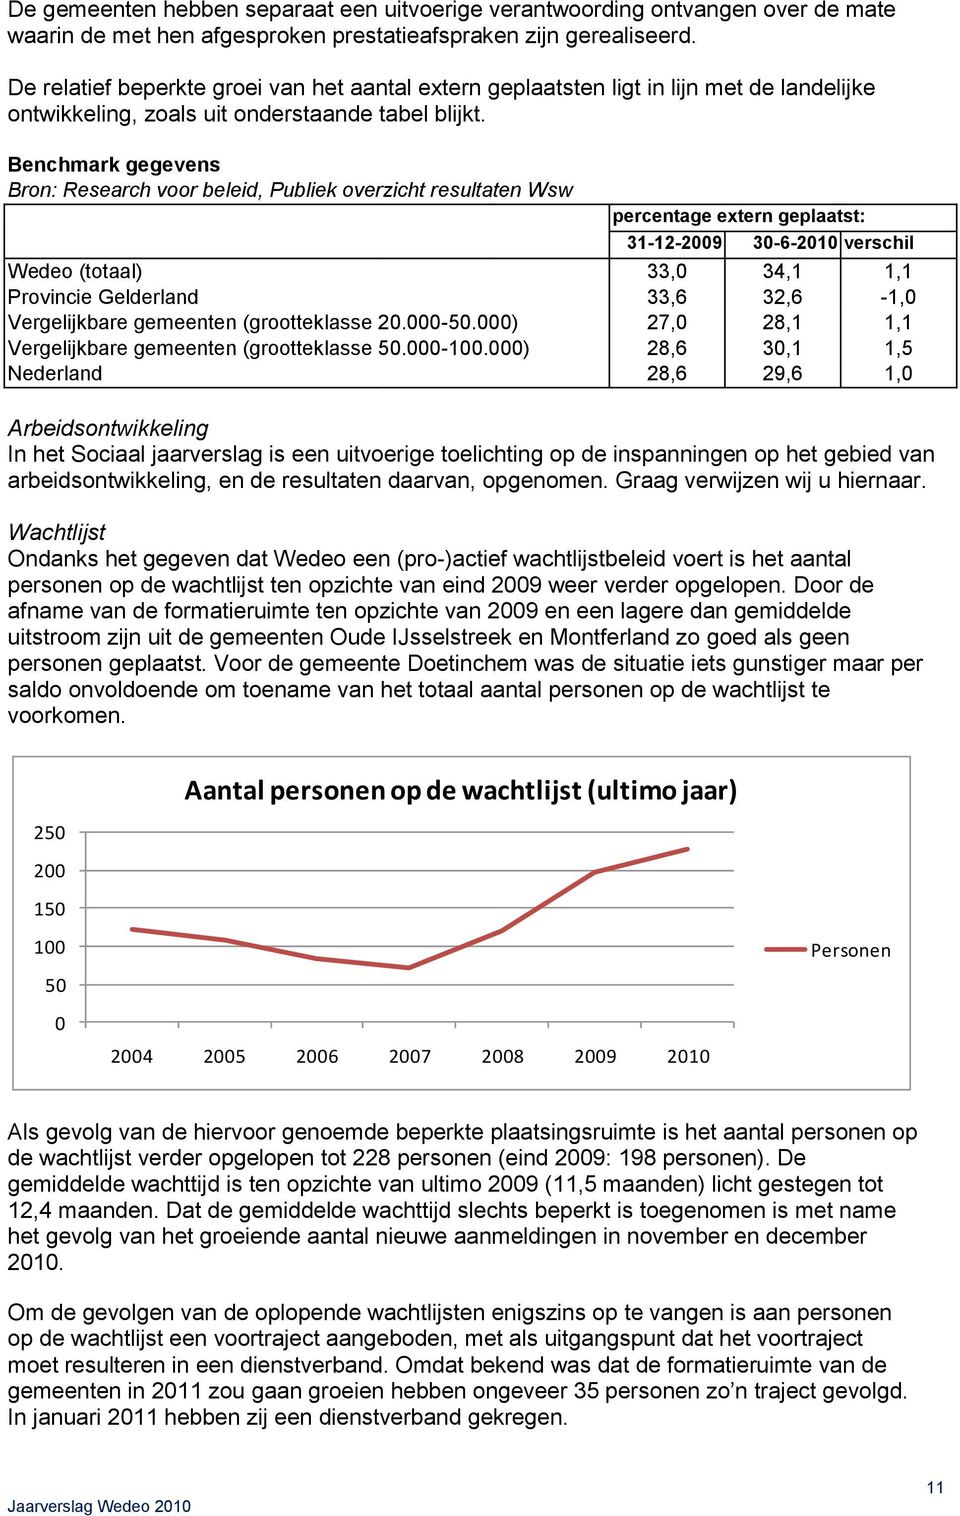 Benchmark gegevens Bron: Research voor beleid, Publiek overzicht resultaten Wsw percentage extern geplaatst: 31-12-2009 30-6-2010 verschil Wedeo (totaal) 33,0 34,1 1,1 Provincie Gelderland 33,6